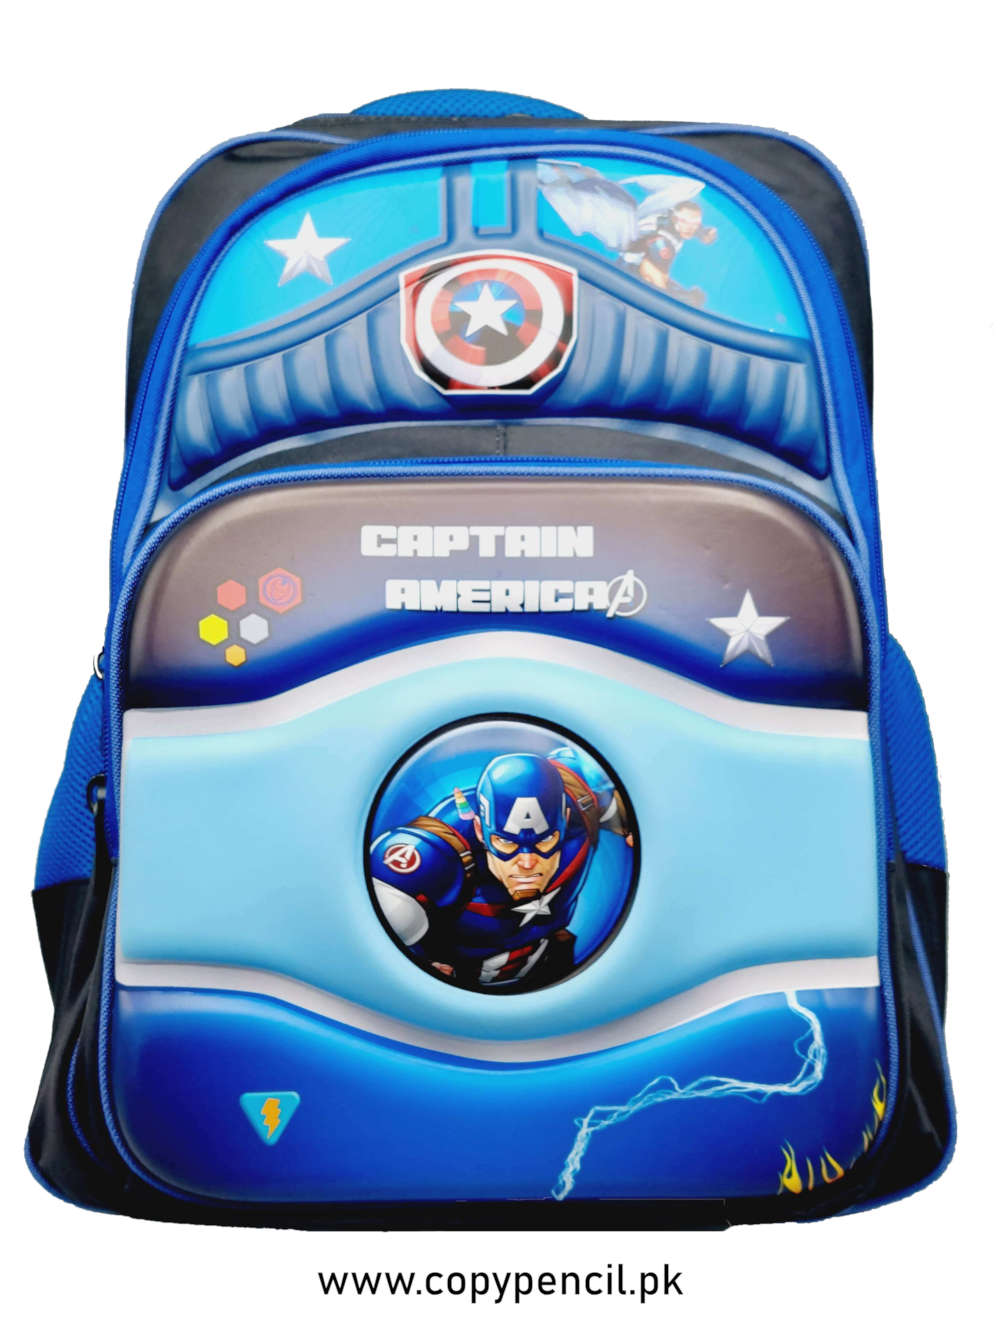 Captain America Themed Backpack For Kids Civil War Superhero